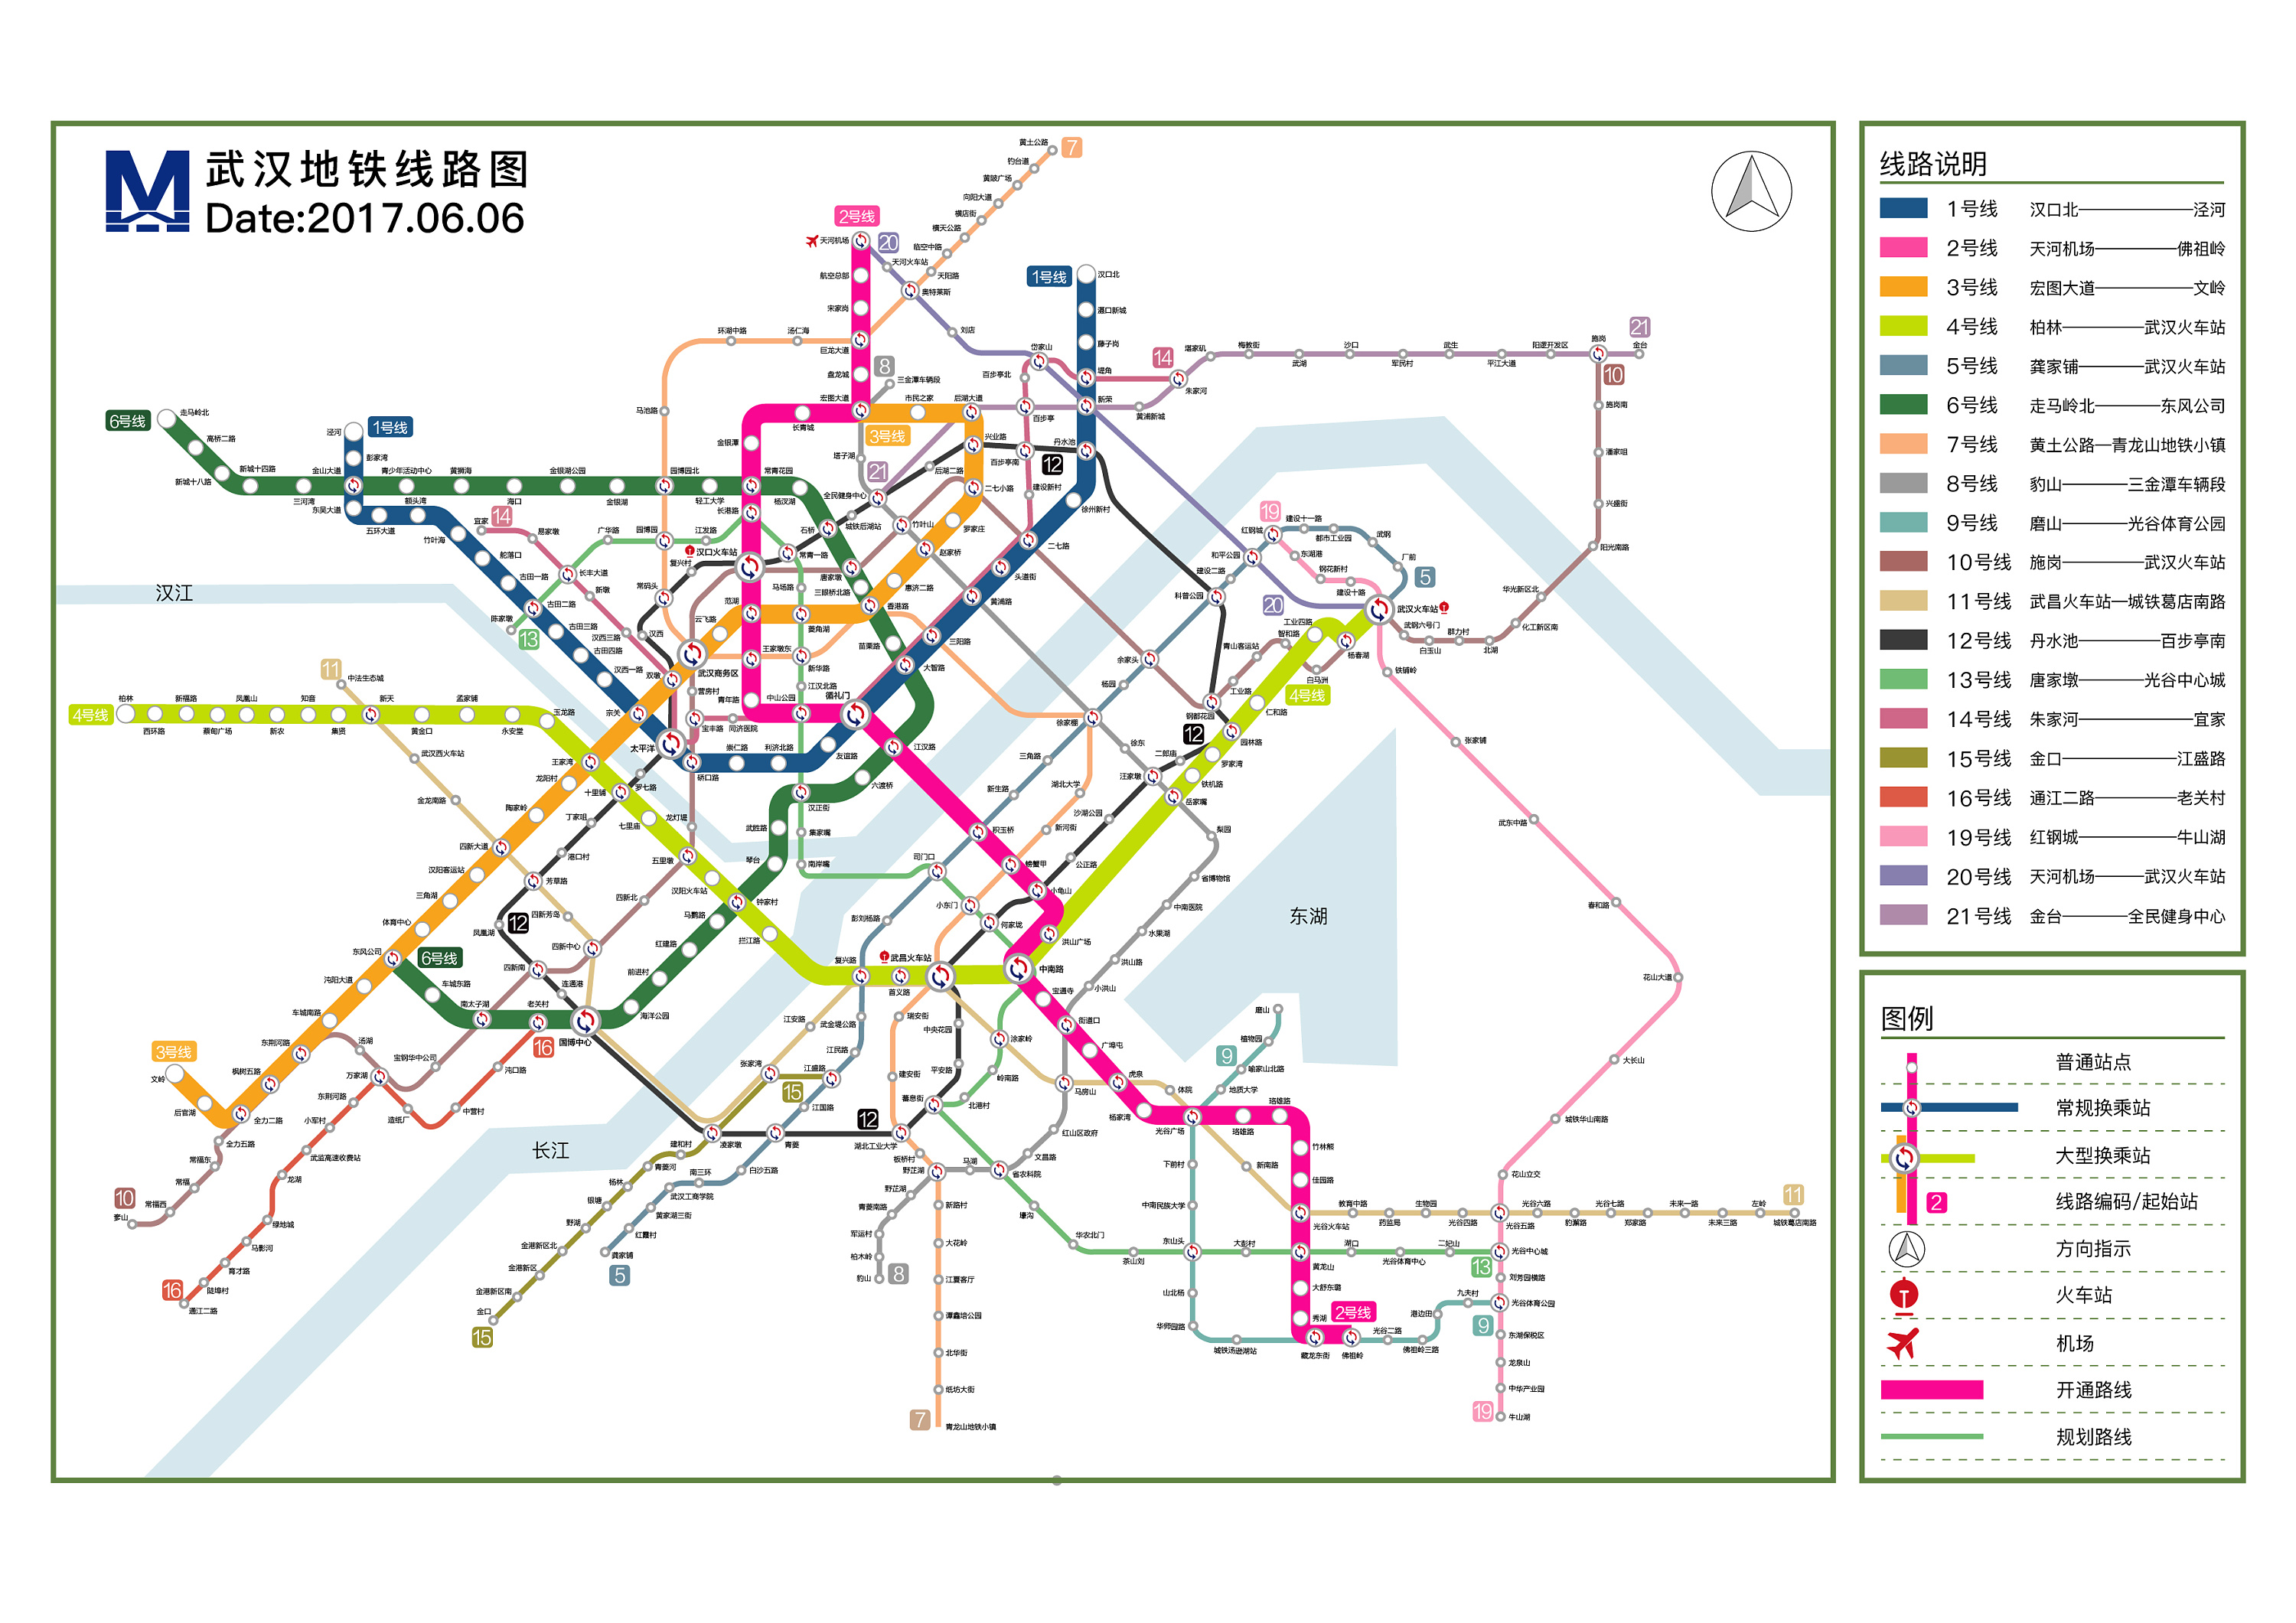 武漢地鐵規劃圖2020_武漢2020城市總體規劃圖 - 神拓網